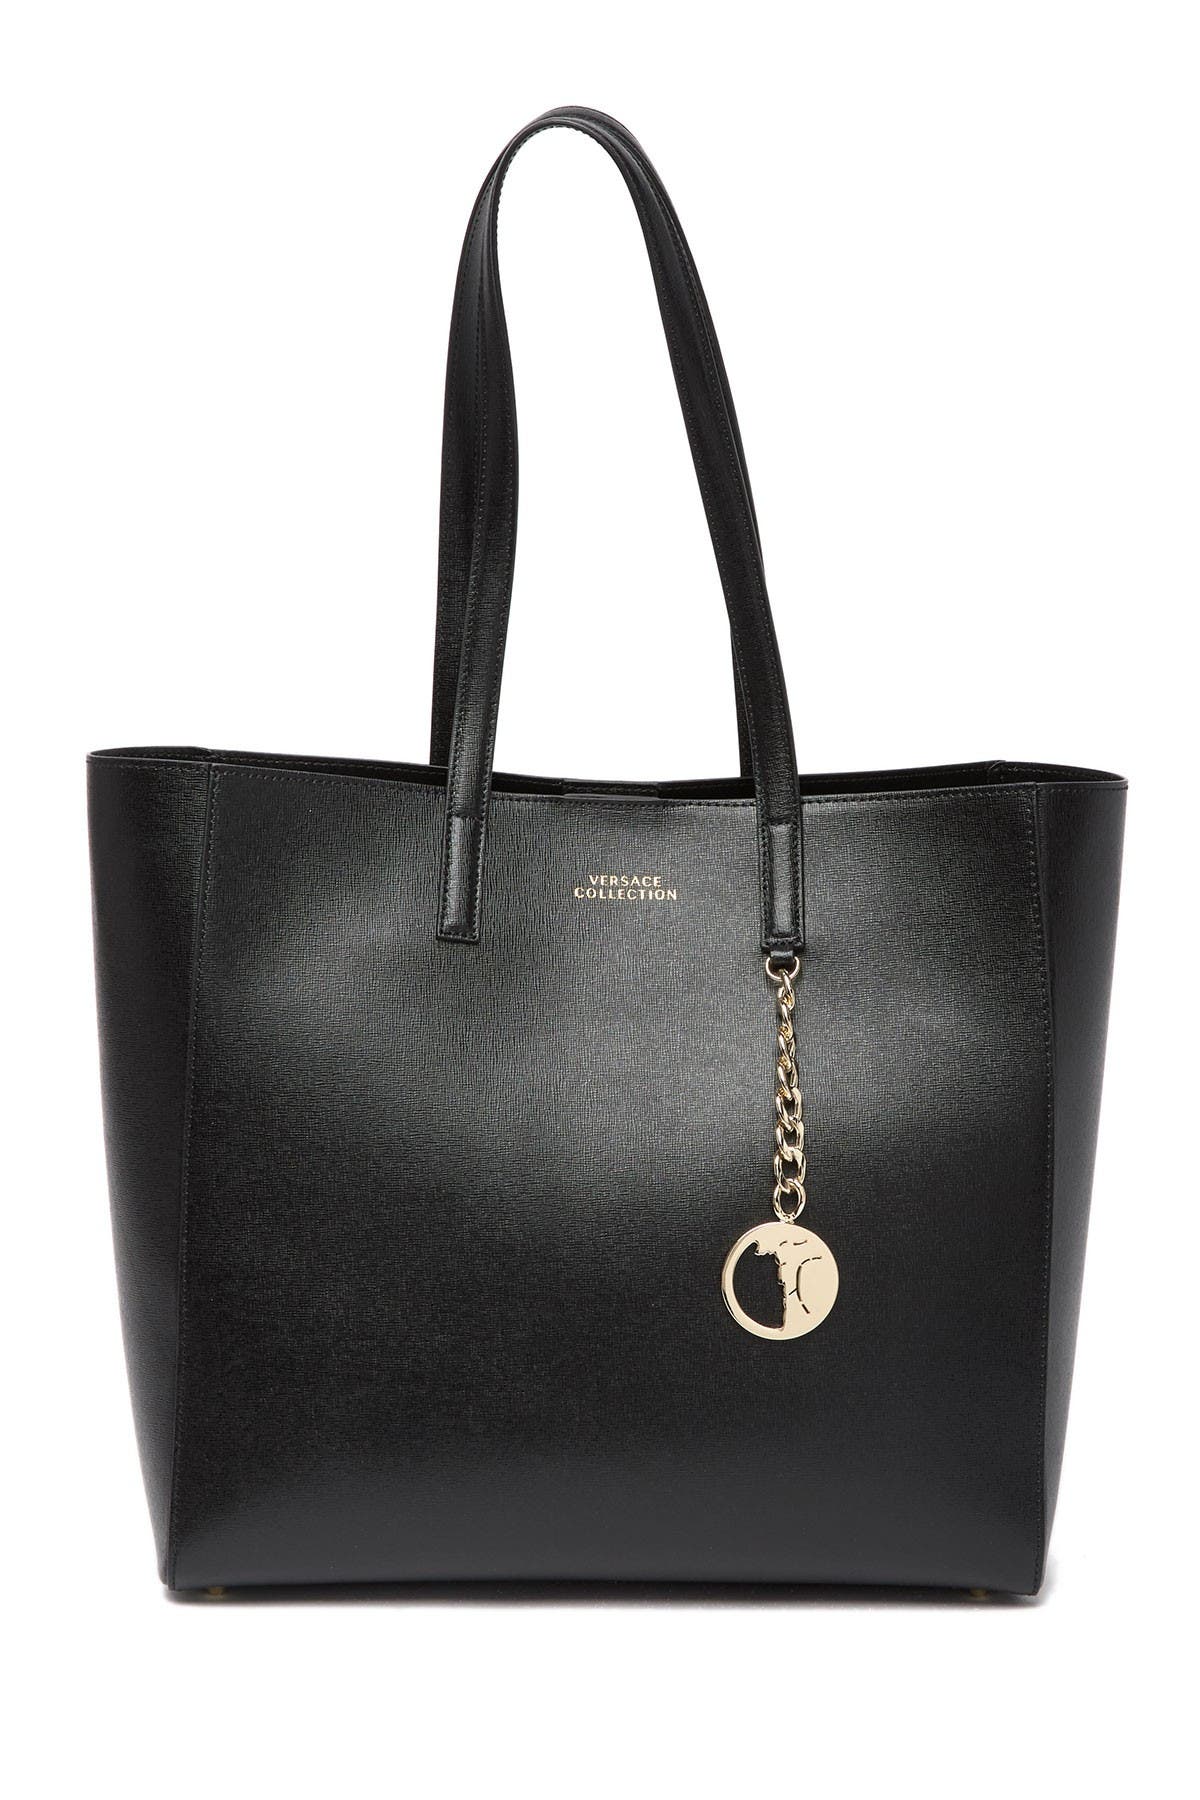 versace saffiano leather satchel